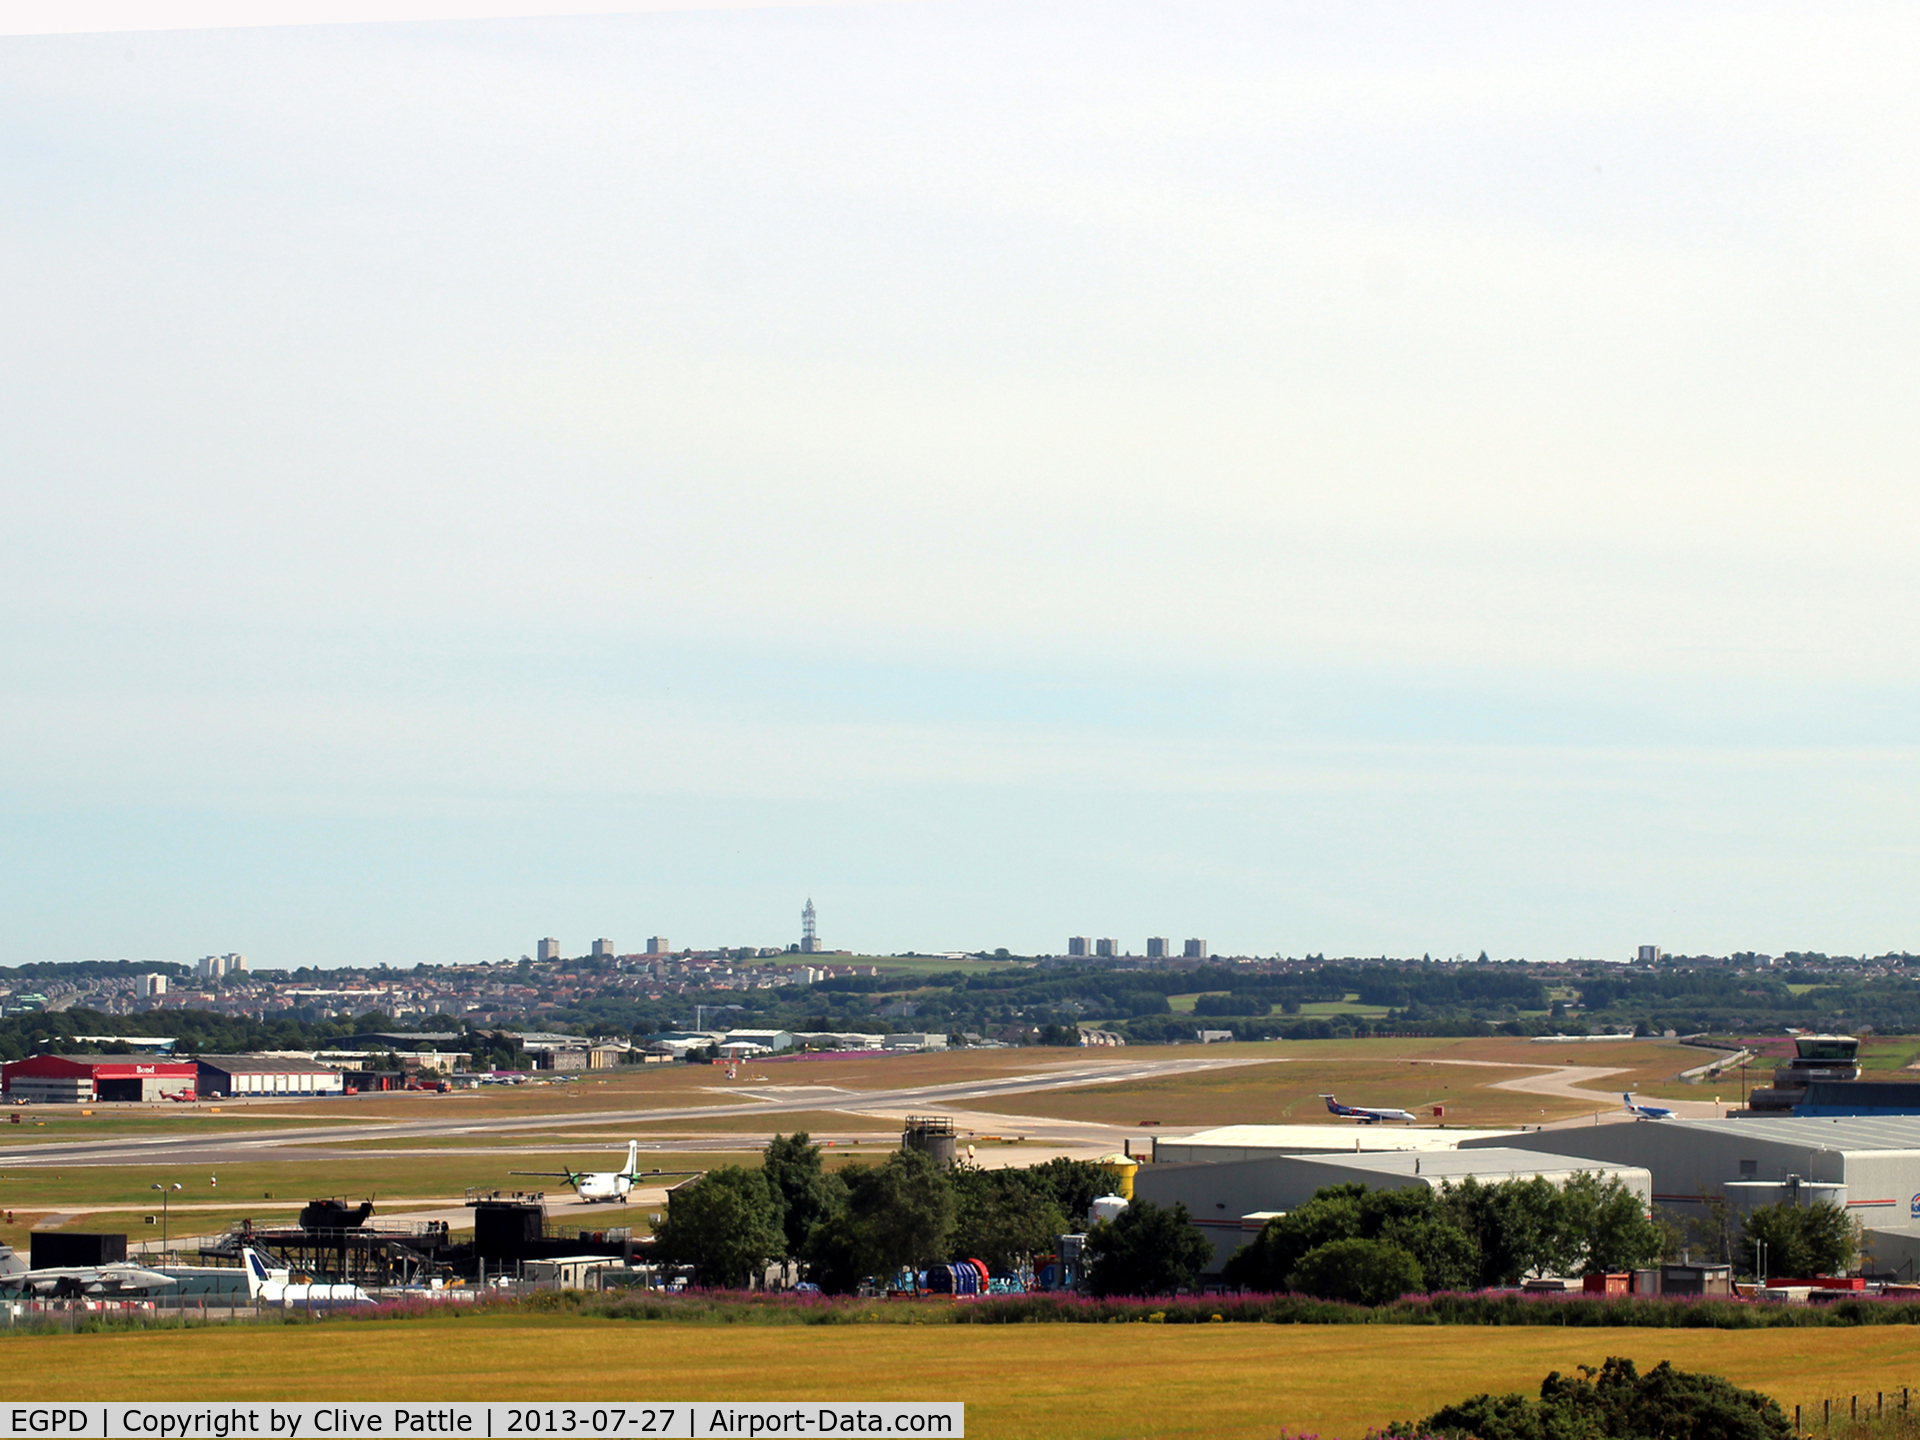 Aberdeen Airport, Aberdeen, Scotland United Kingdom (EGPD) - General view of EGPD Aberdeen Airport looking southeast